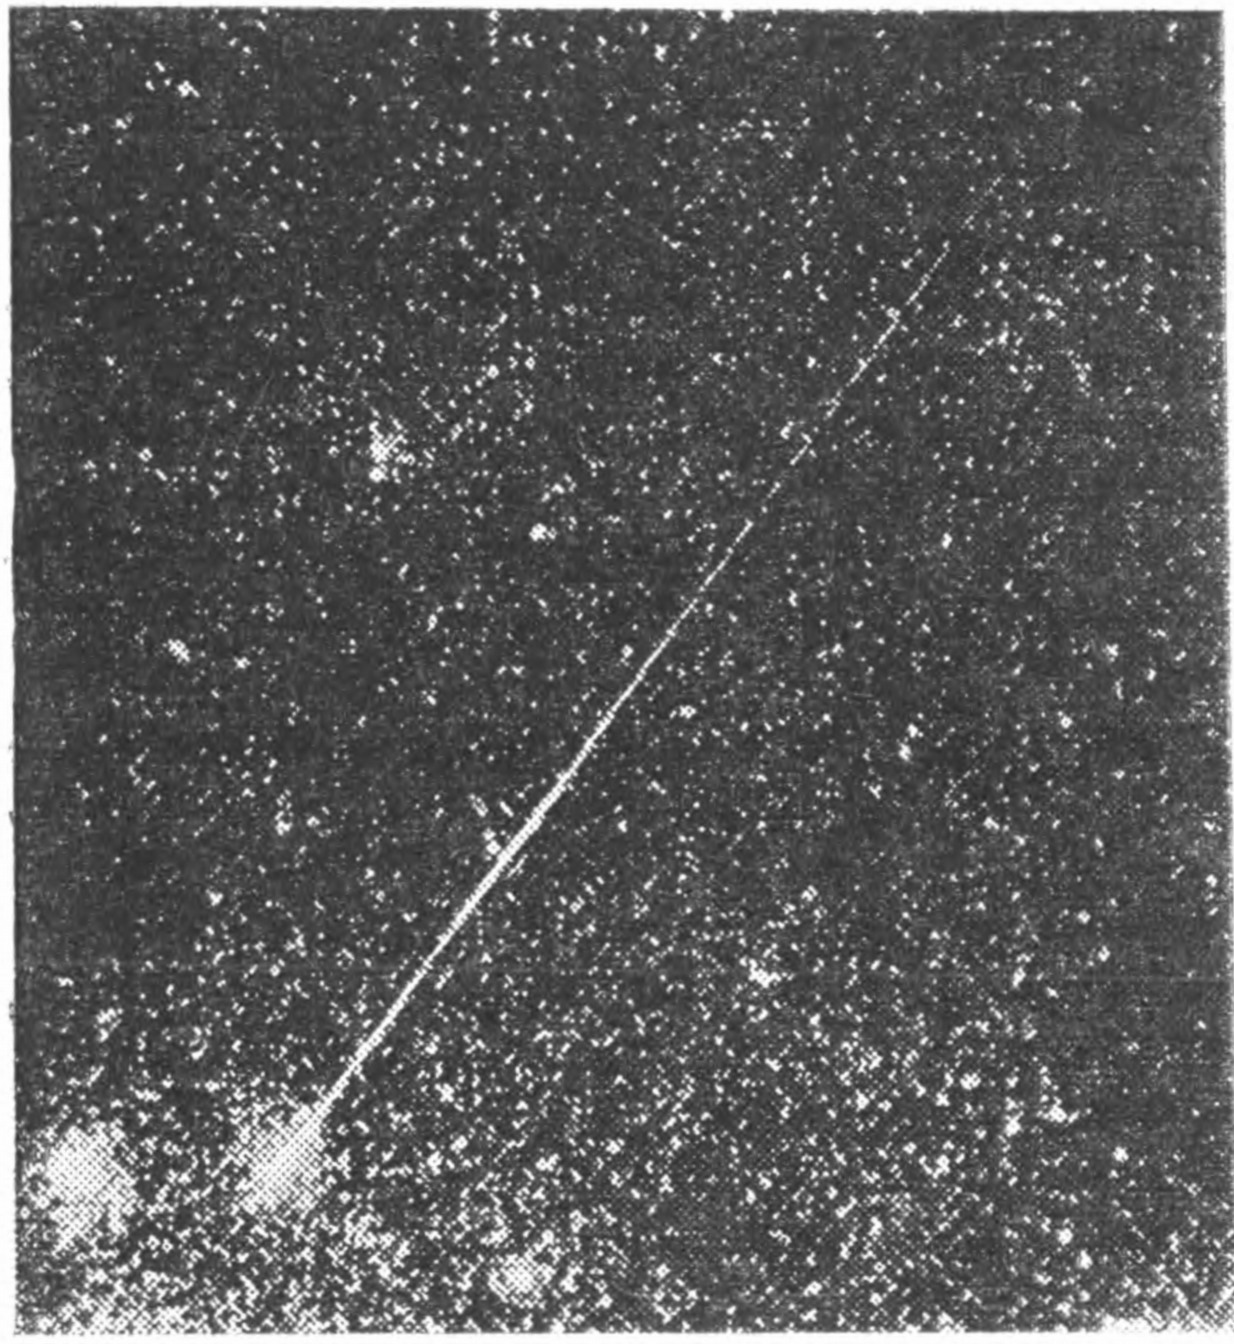 Рис. 91. Фотография яркого метеора. Утолщения следа метеора указывают на повторные вспышки его яркости при полете